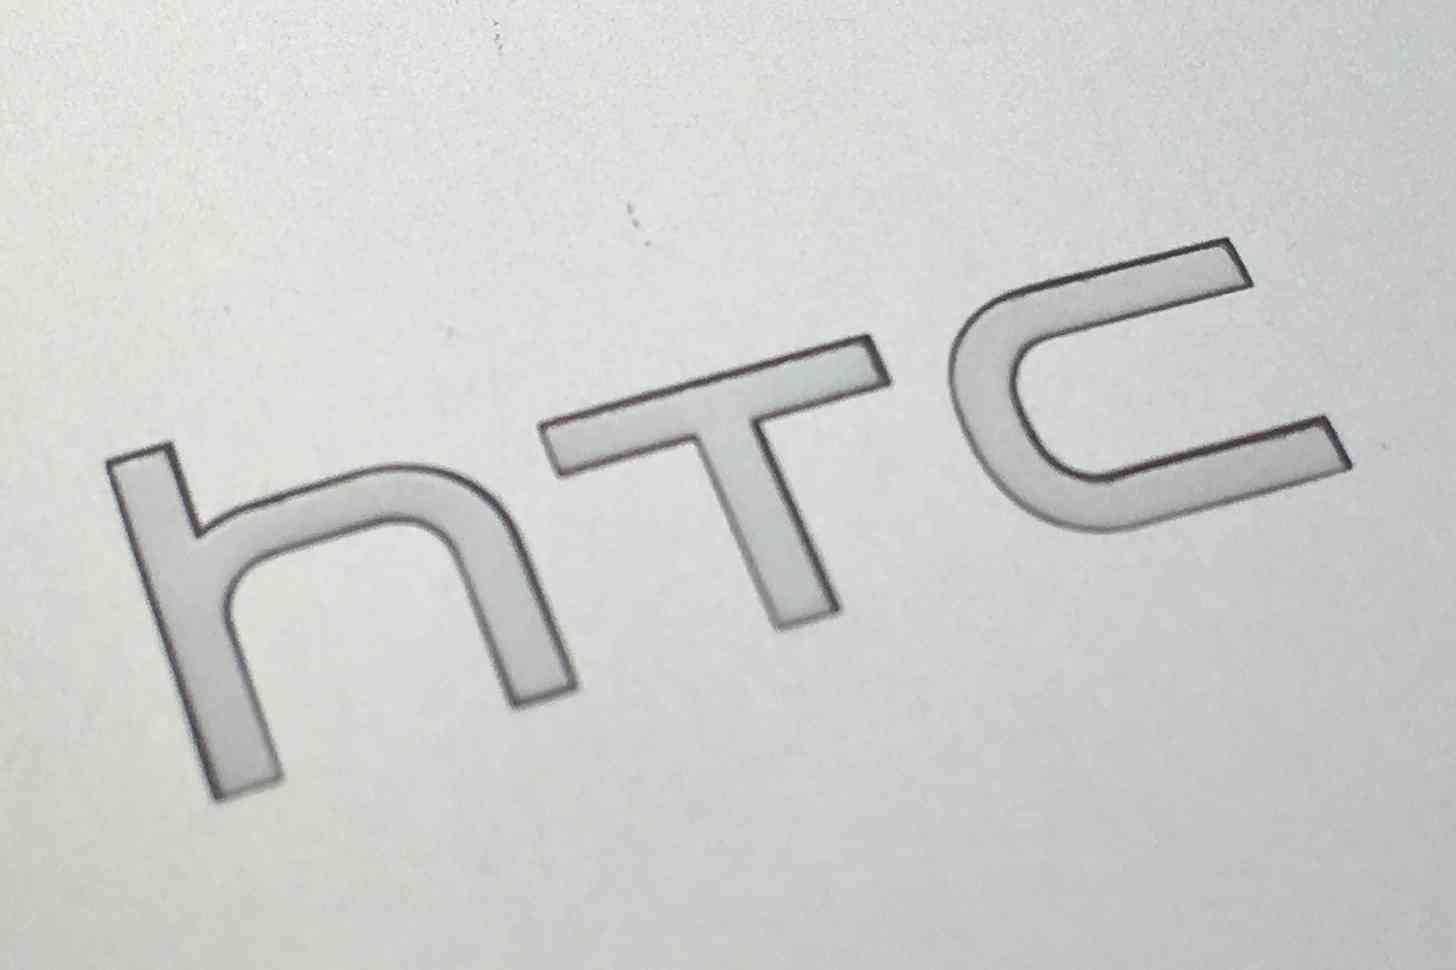 HTC logo One M7